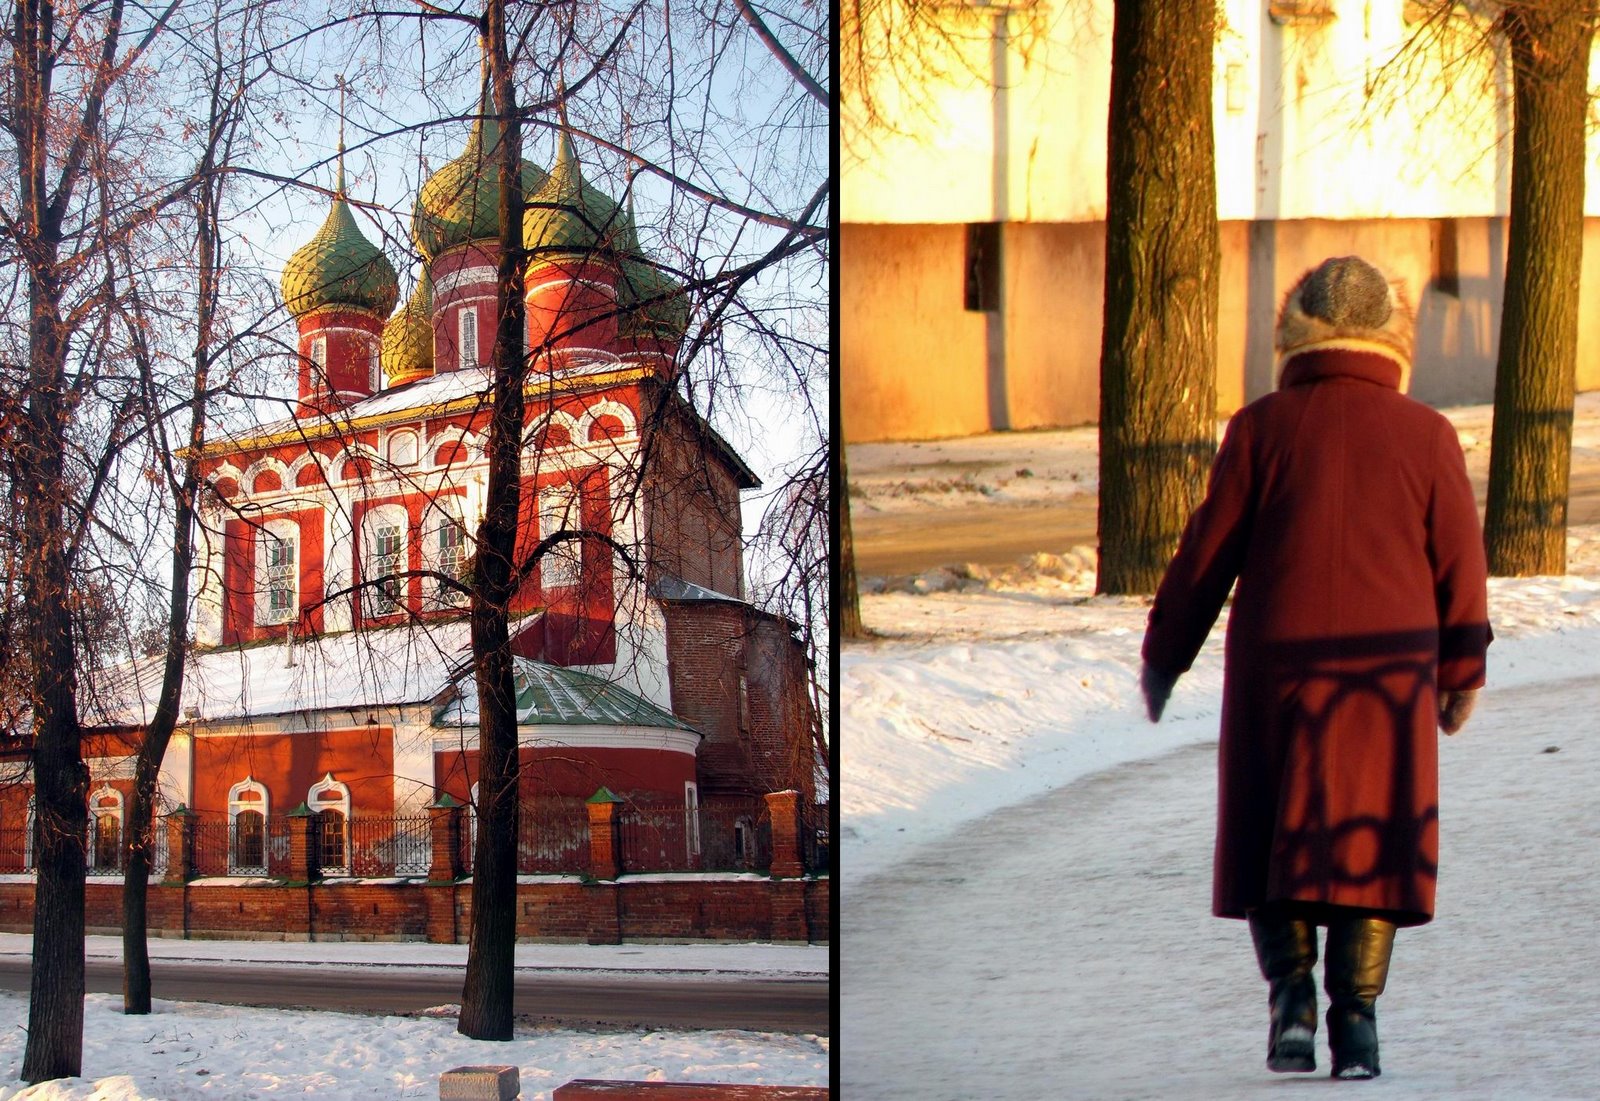 Kremlin de Iarloslavl et dame de dos marchant sur un chemin enneigé.